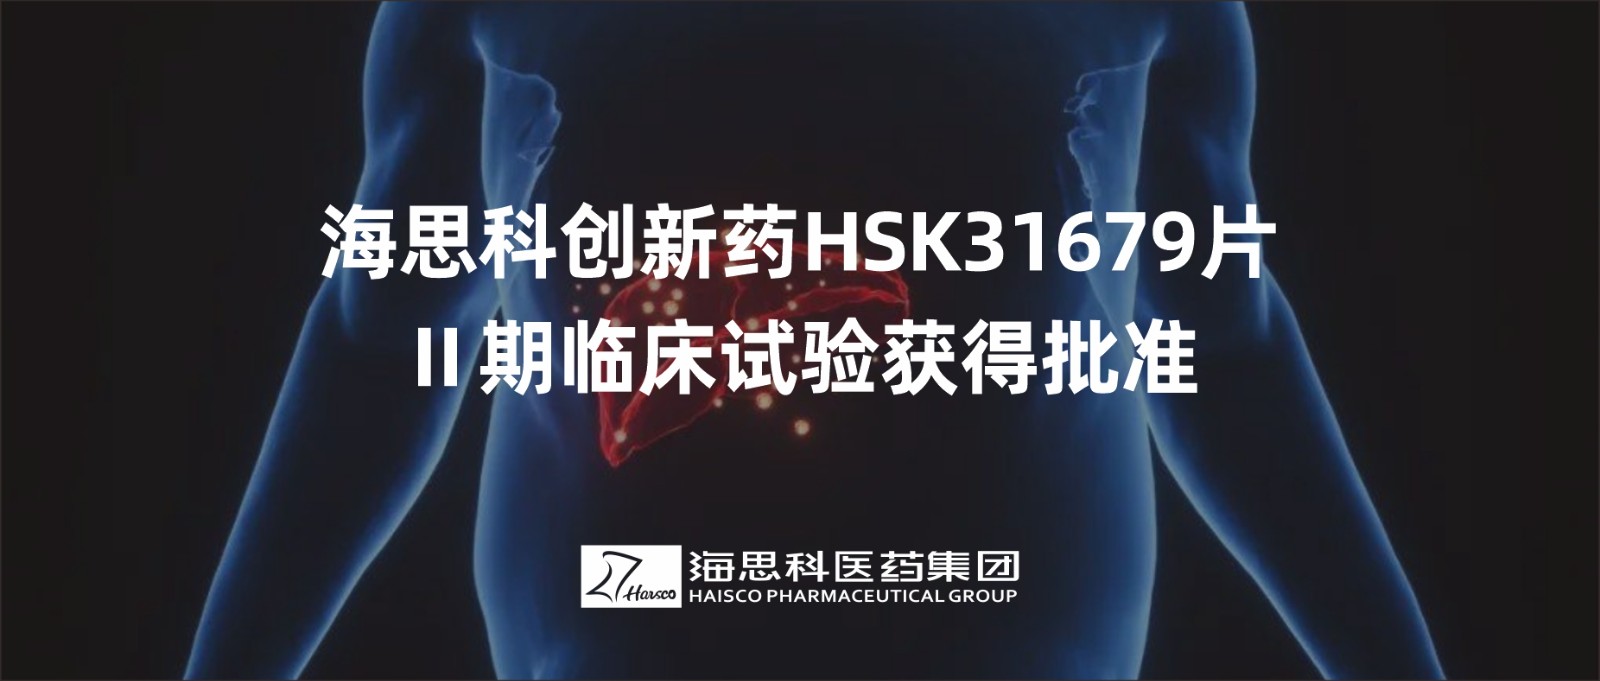 海思科創新藥HSK31679片Ⅱ期臨床試驗獲得批準